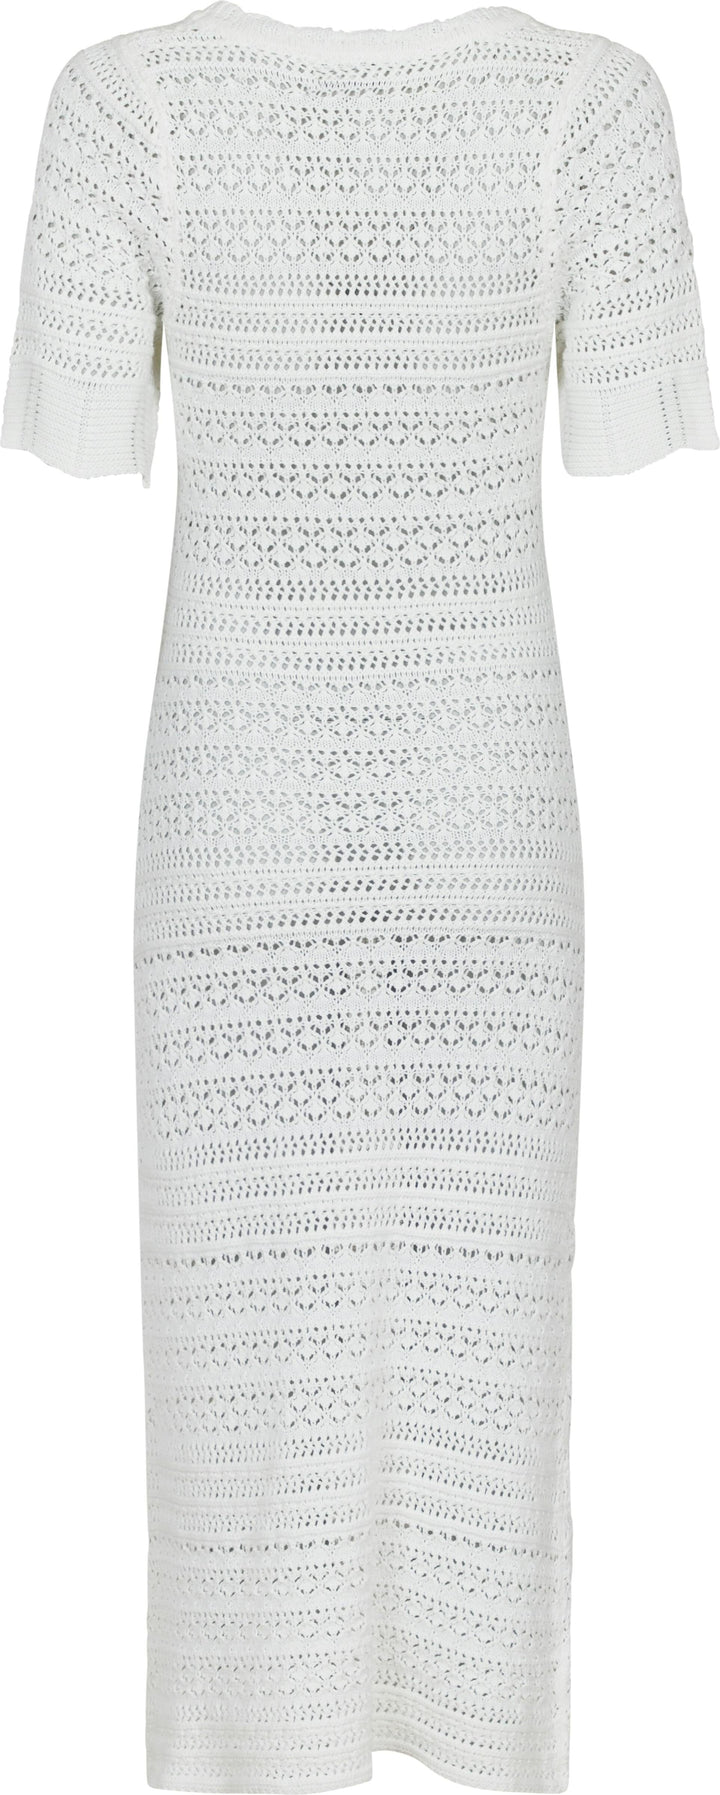 Neo Noir - Eiko Knit Dress - Off White